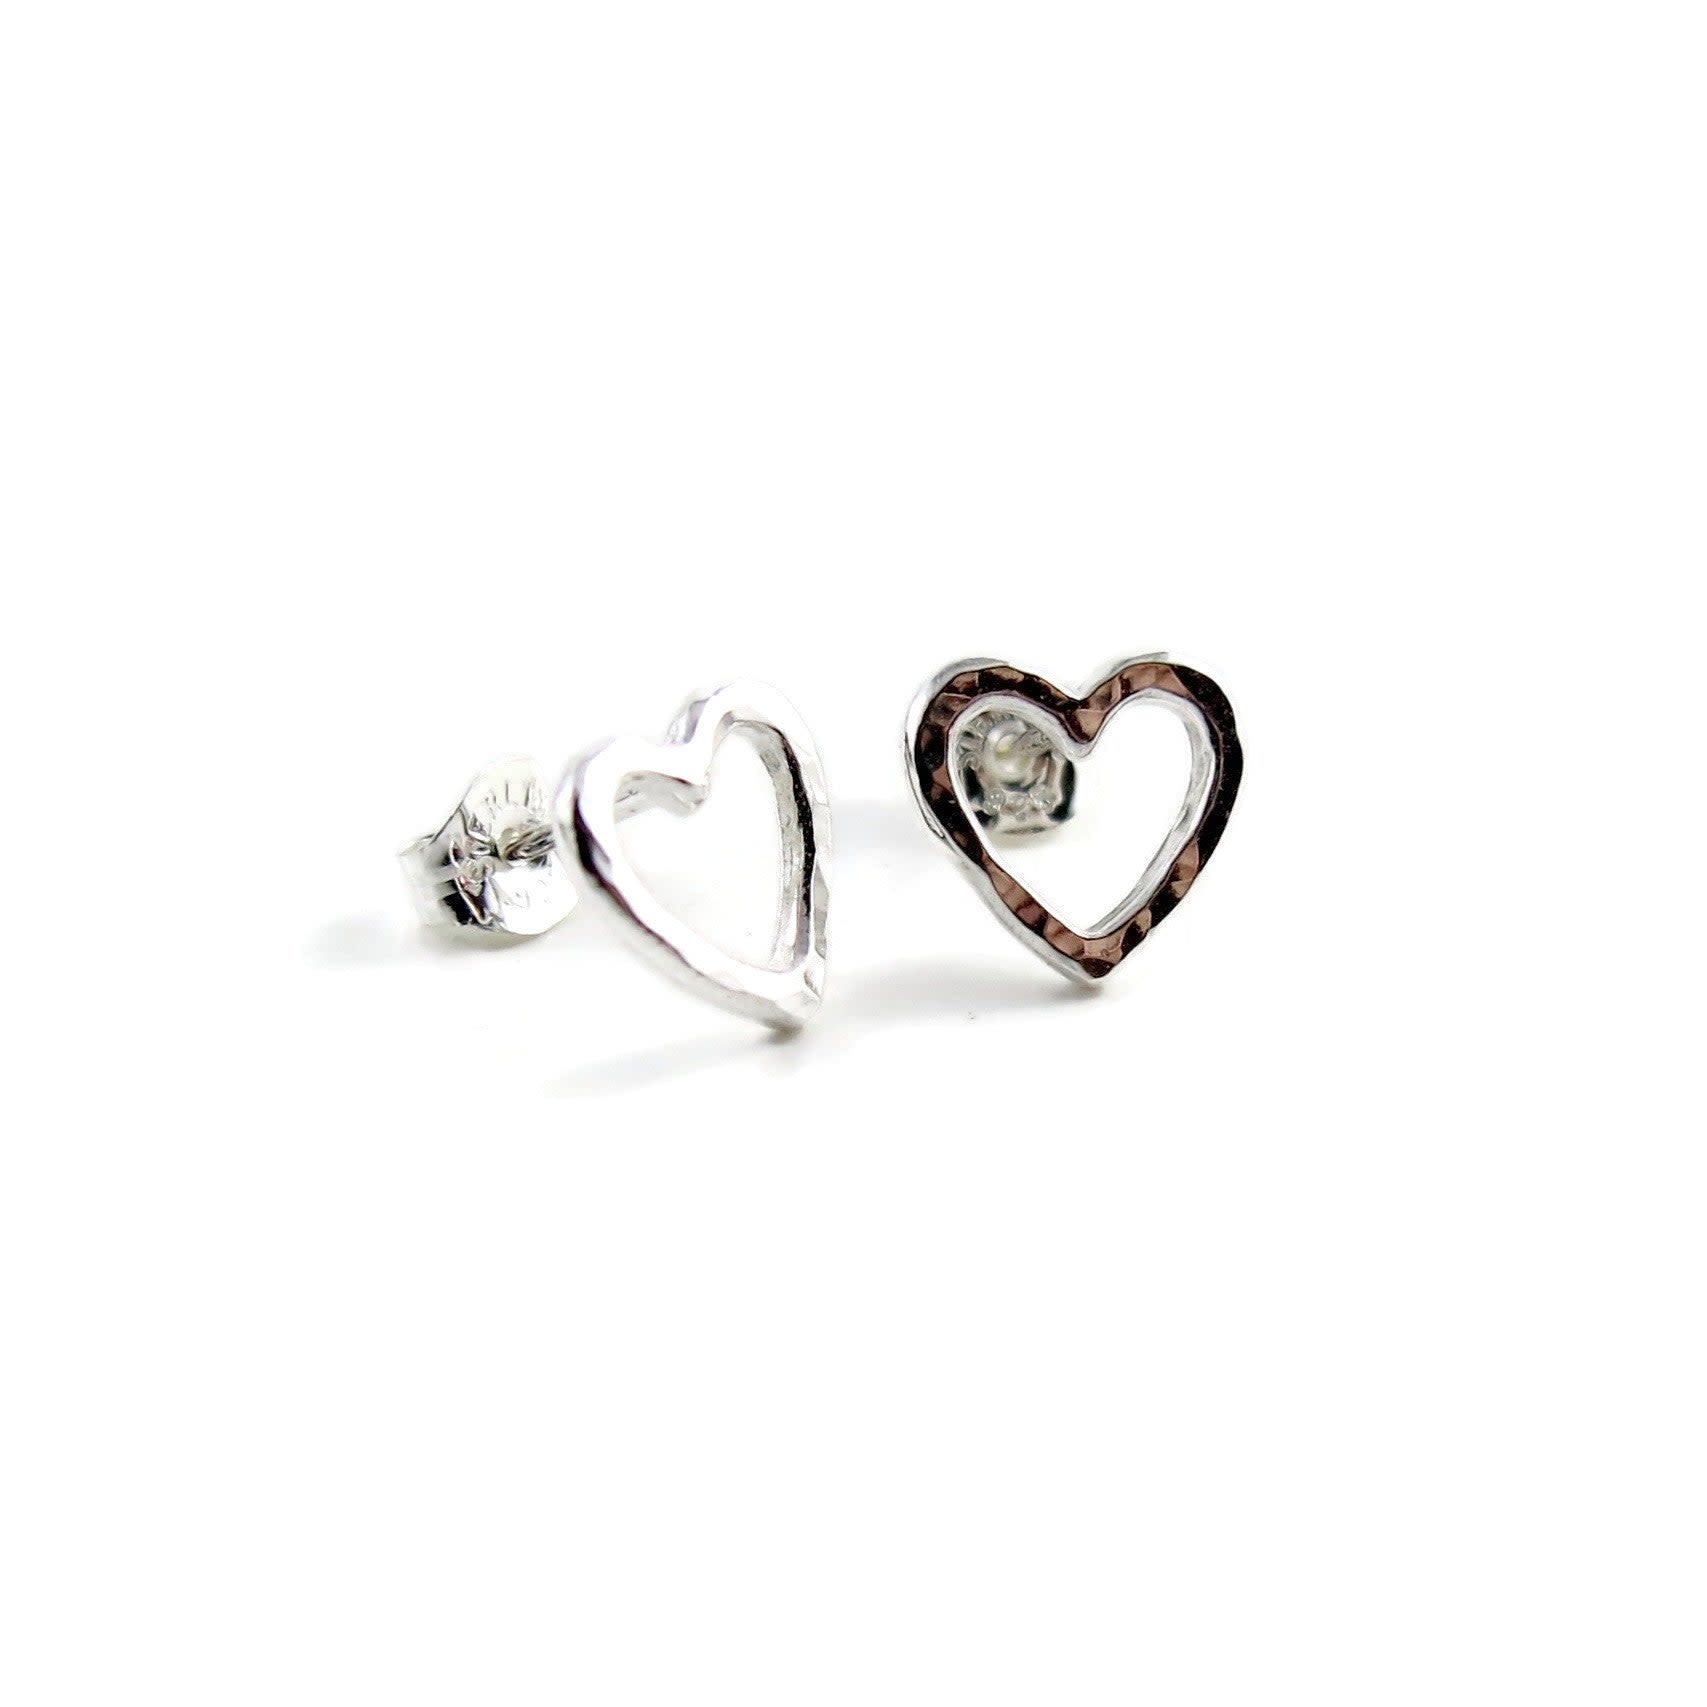 Mikel Grant Jewelry Earrings - Open Heart Studs - Sterling Silver